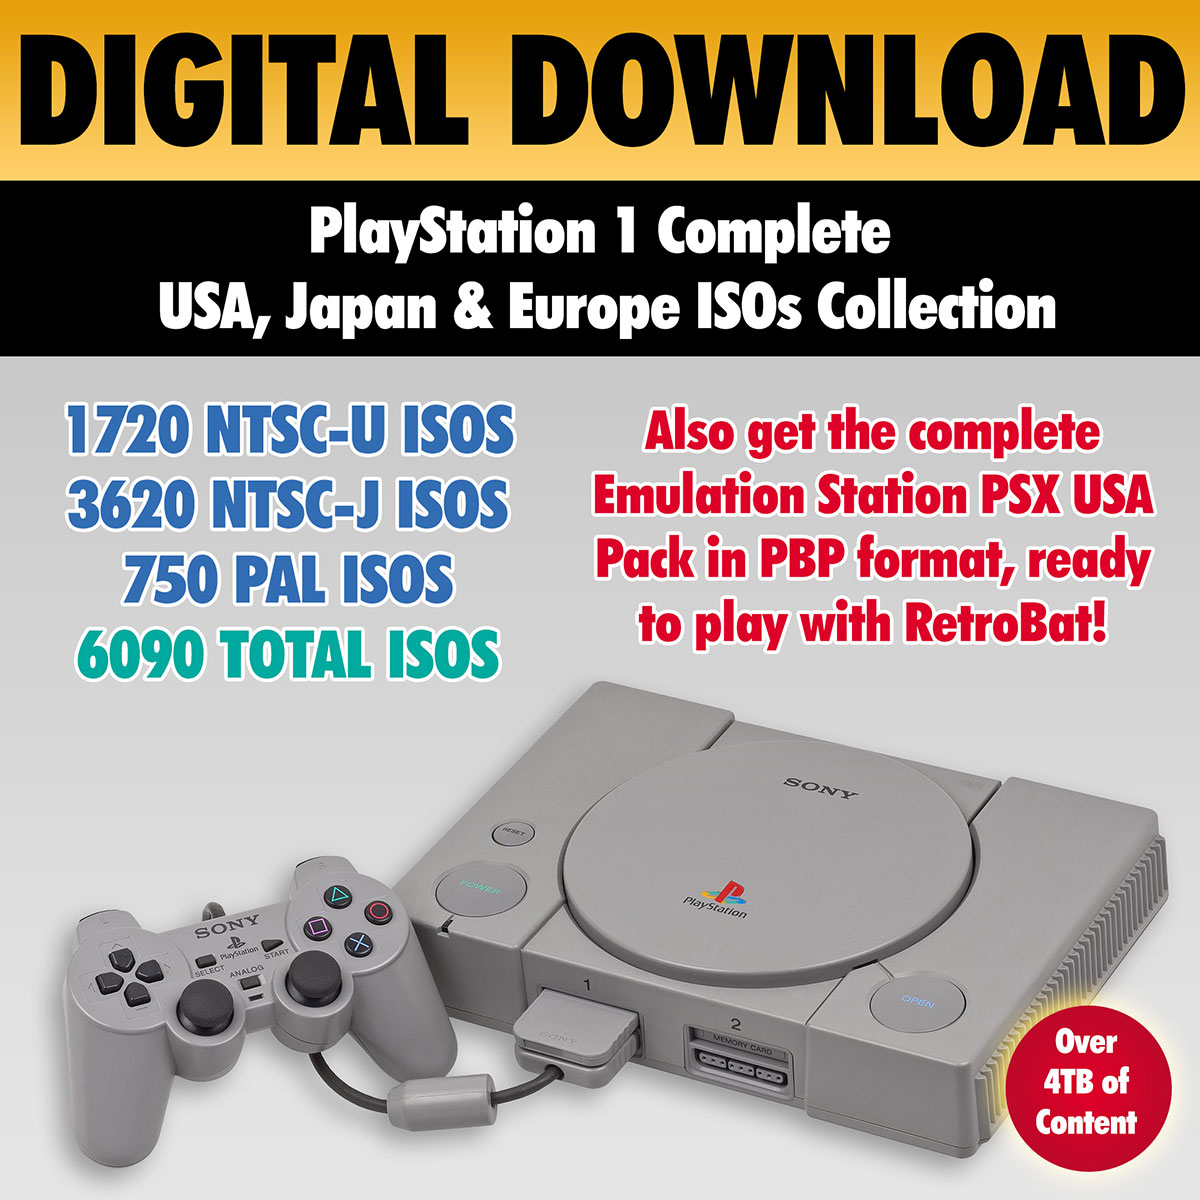 Sony PlayStation 2 (PS2) ROMs & ISOs - RomUlation